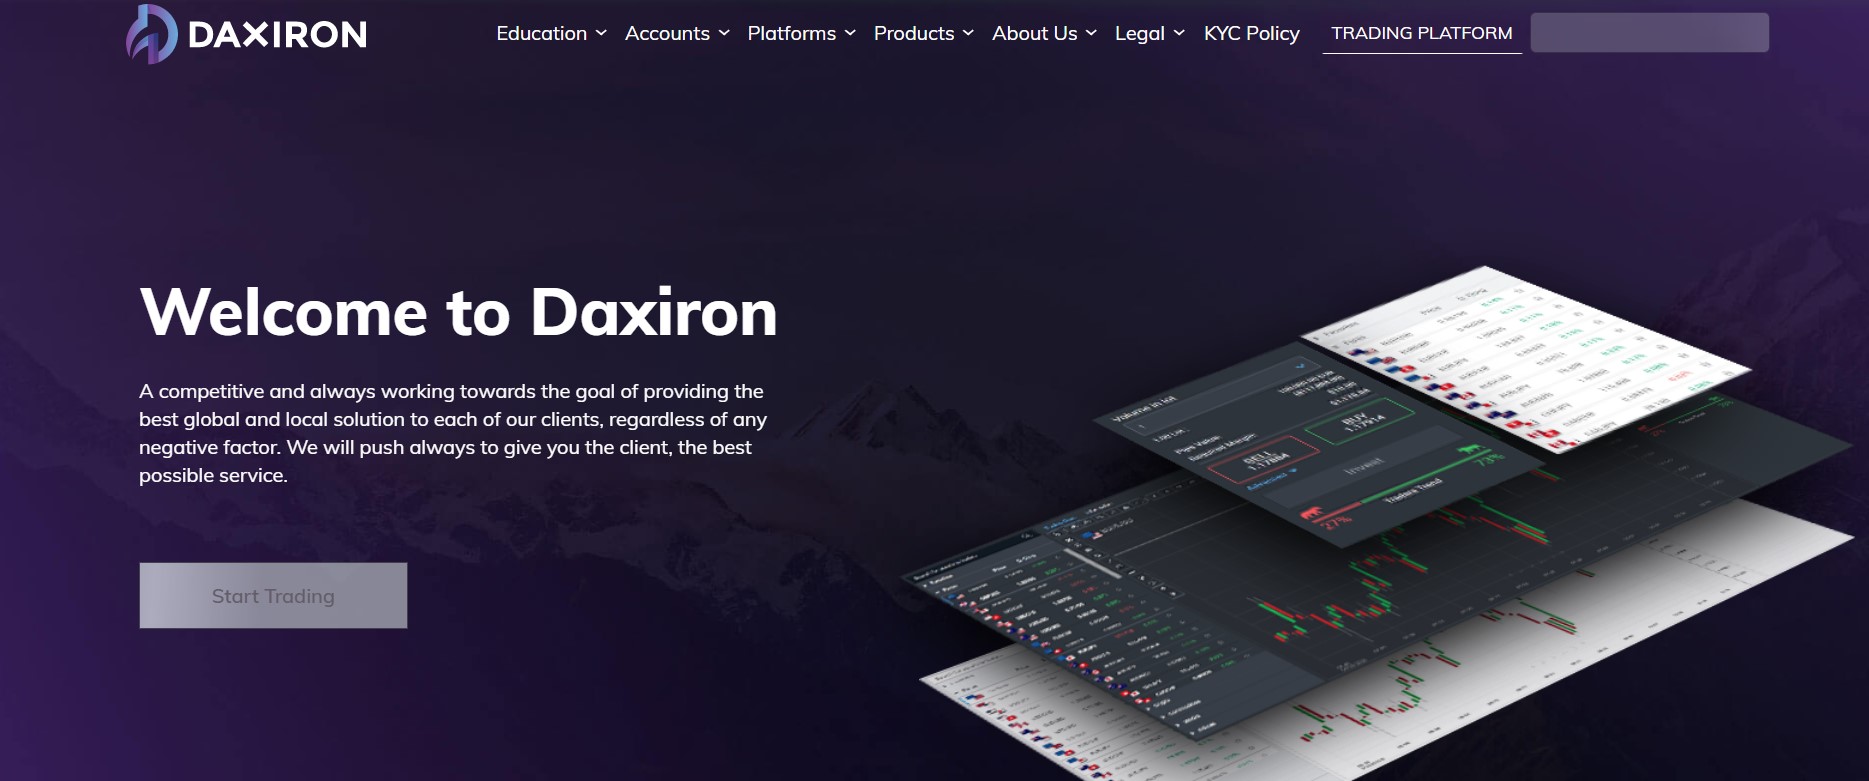 Daxiron website